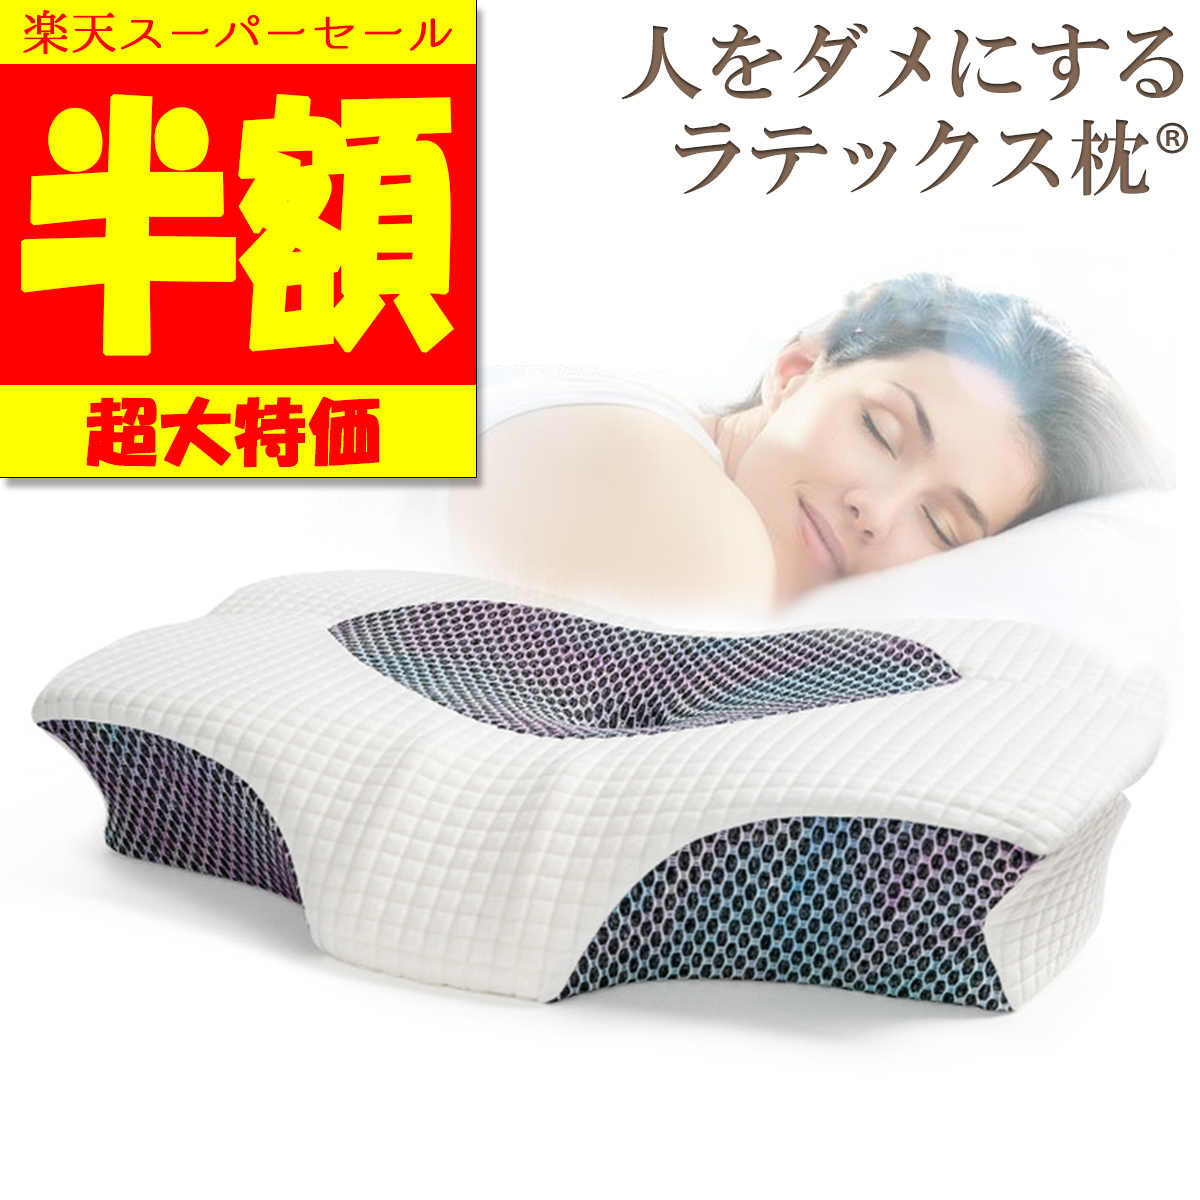 ❤️ギフトにもオススメ❤️ 枕 安眠 肩がラク 低反発 まくら 低反発枕